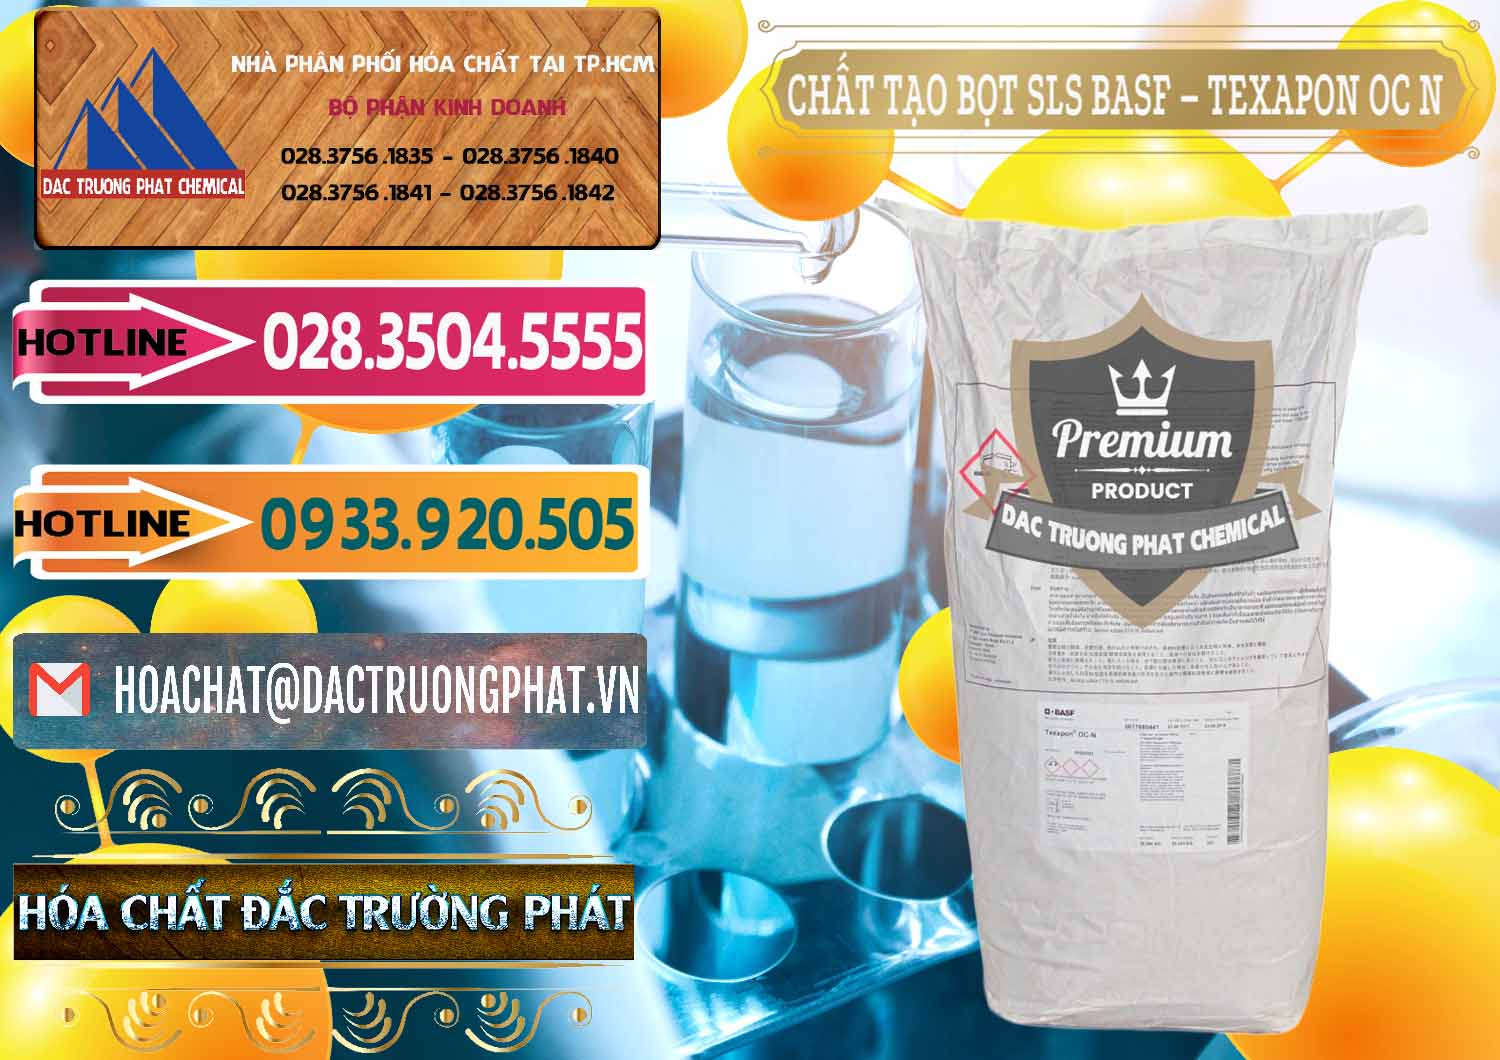 Cty cung ứng - bán Chất Tạo Bọt SLS - Sodium Lauryl Sulfate BASF Texapon OC N - 0049 - Cty chuyên kinh doanh _ phân phối hóa chất tại TP.HCM - dactruongphat.vn